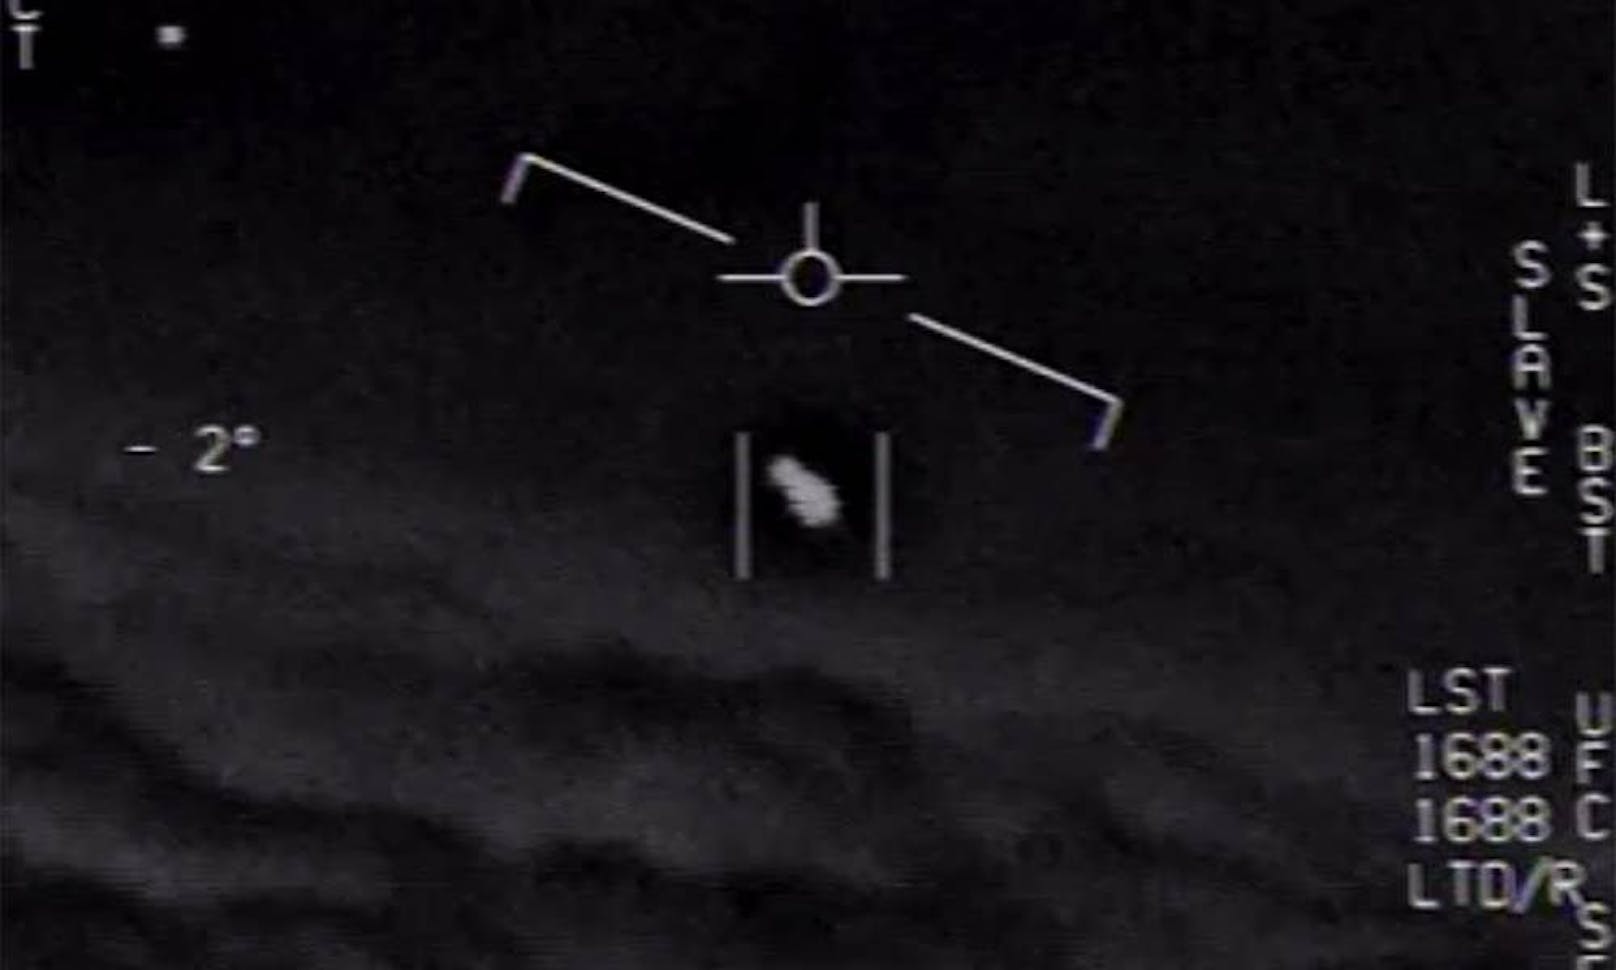 Ein Bericht der US-Geheimdienste untersucht mehrere UFO-Sichtungen in den vergangenen Jahren. Nun wurde er öffentlich gemacht.